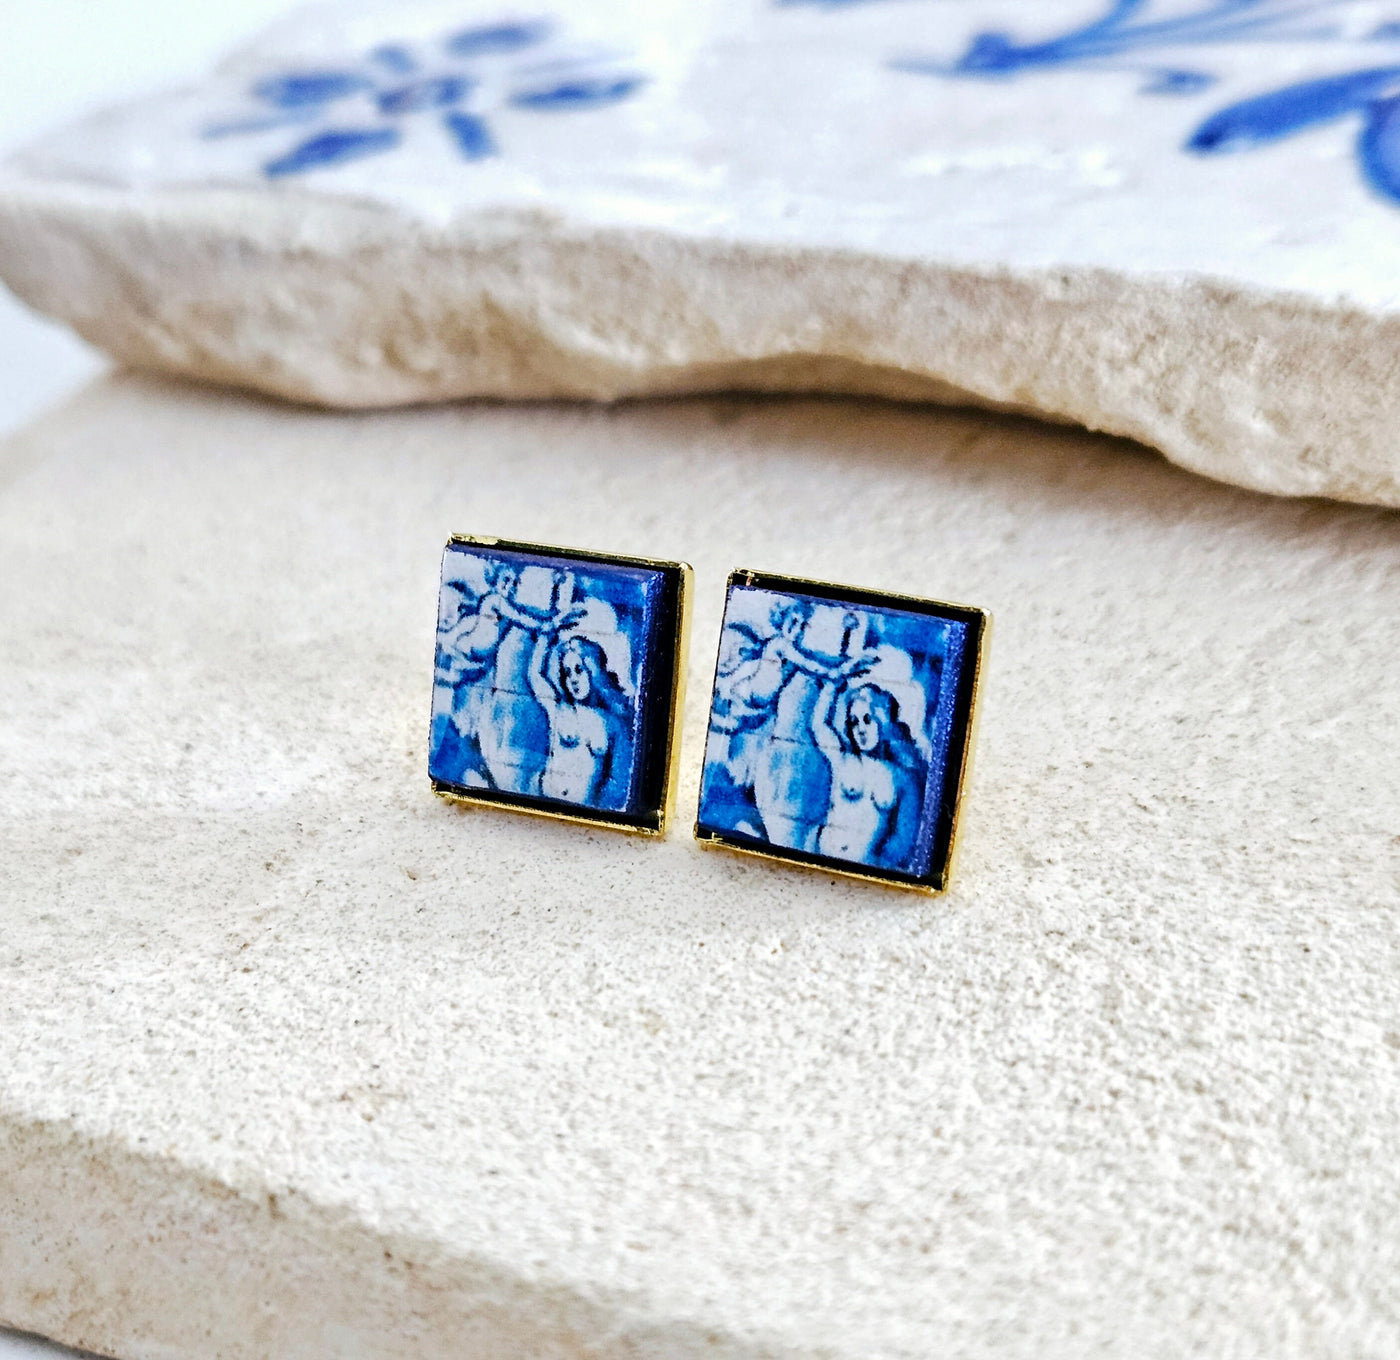 Blue White Tile Venus Gold Stud Earring Antique Portugal Azulejo Tile Portuguese Majolica Historical Gift for Her Birthday Renaissance Gift